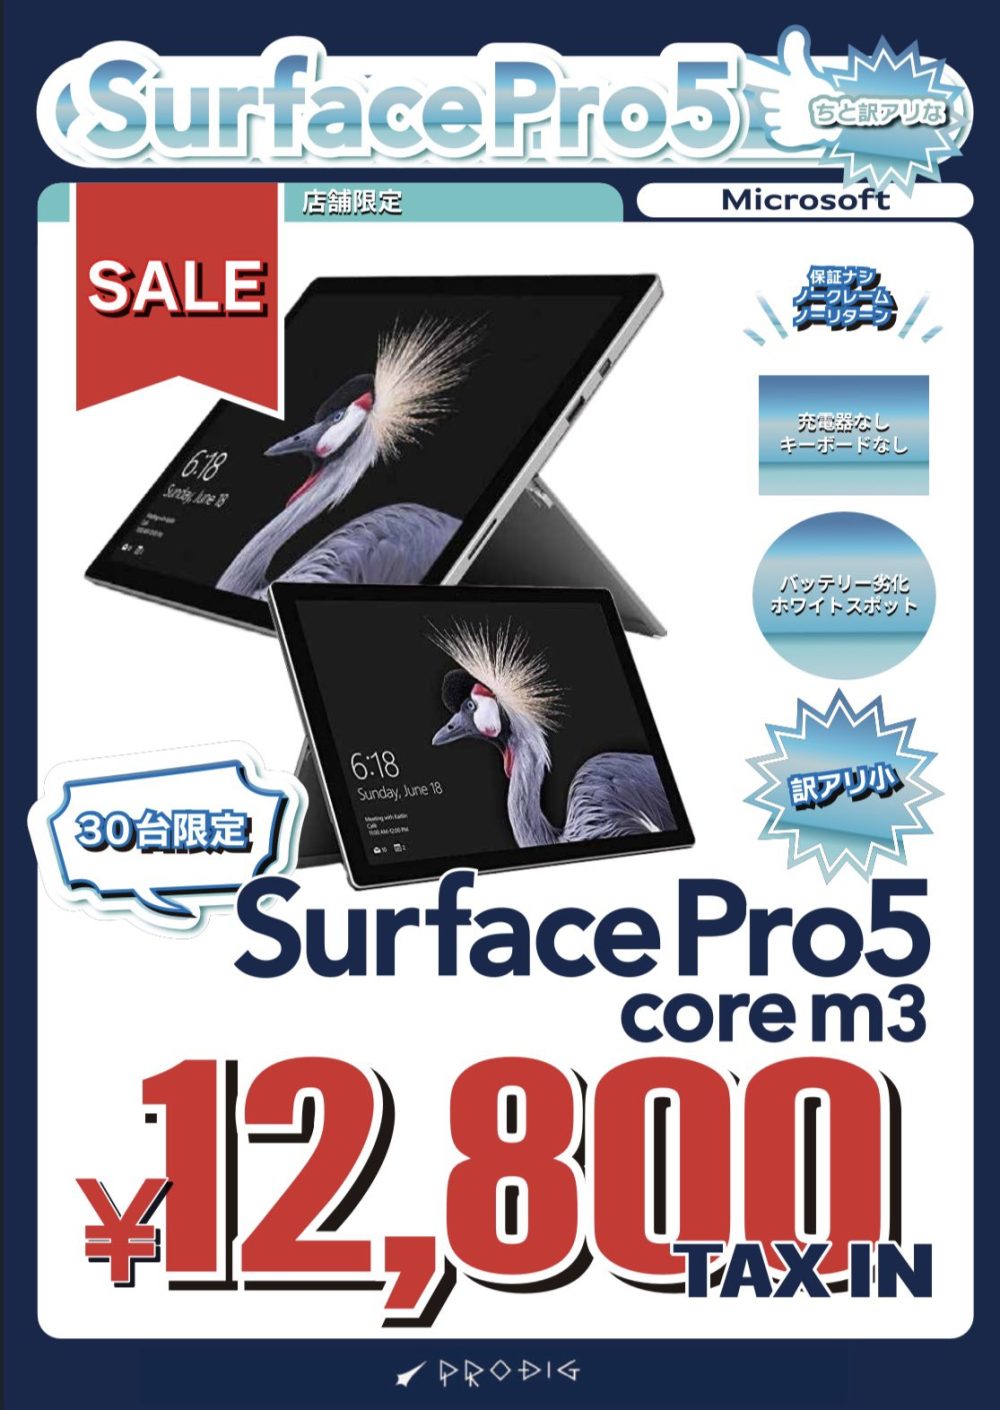 秋葉原でジャンク品のSurface Pro 5が12,800円で販売中